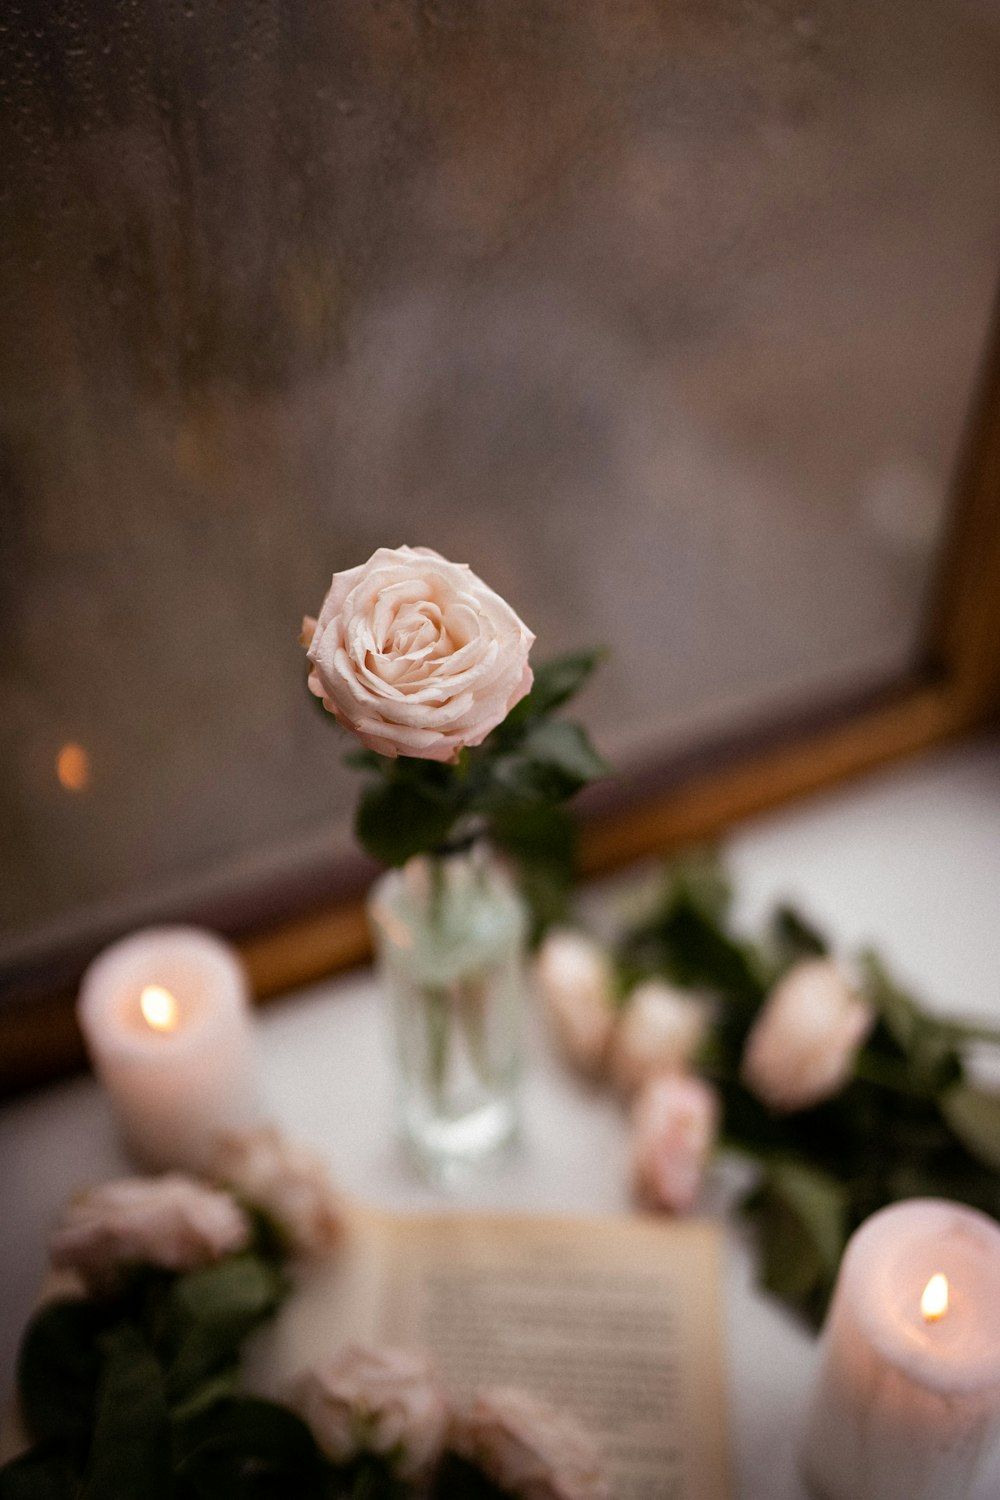 テーブルの上の花瓶とキャンドル